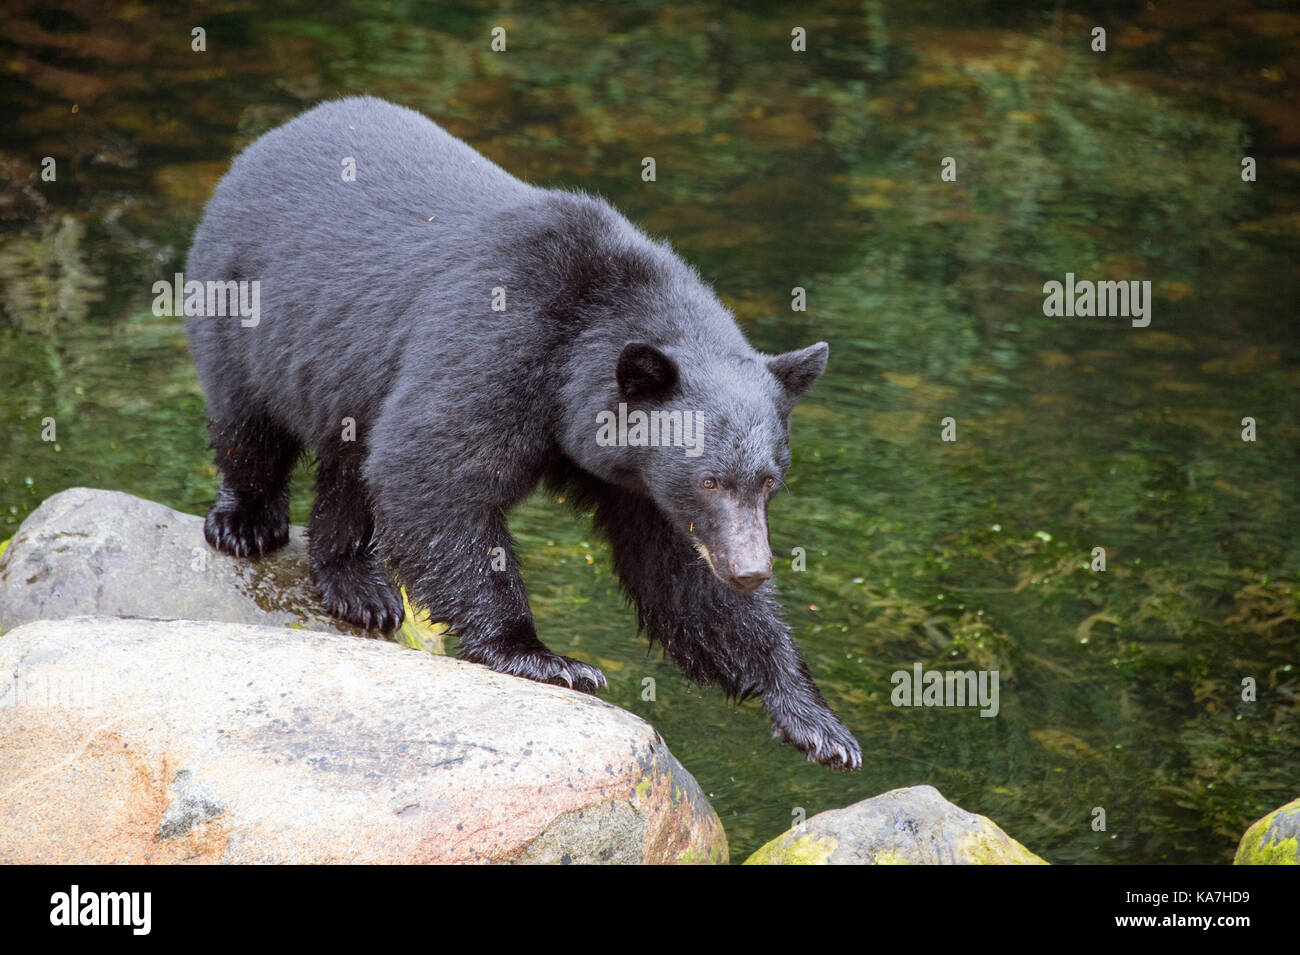 American black bear (Ursus americanus) in Ucluelet, British Columbia, Canada Stock Photo